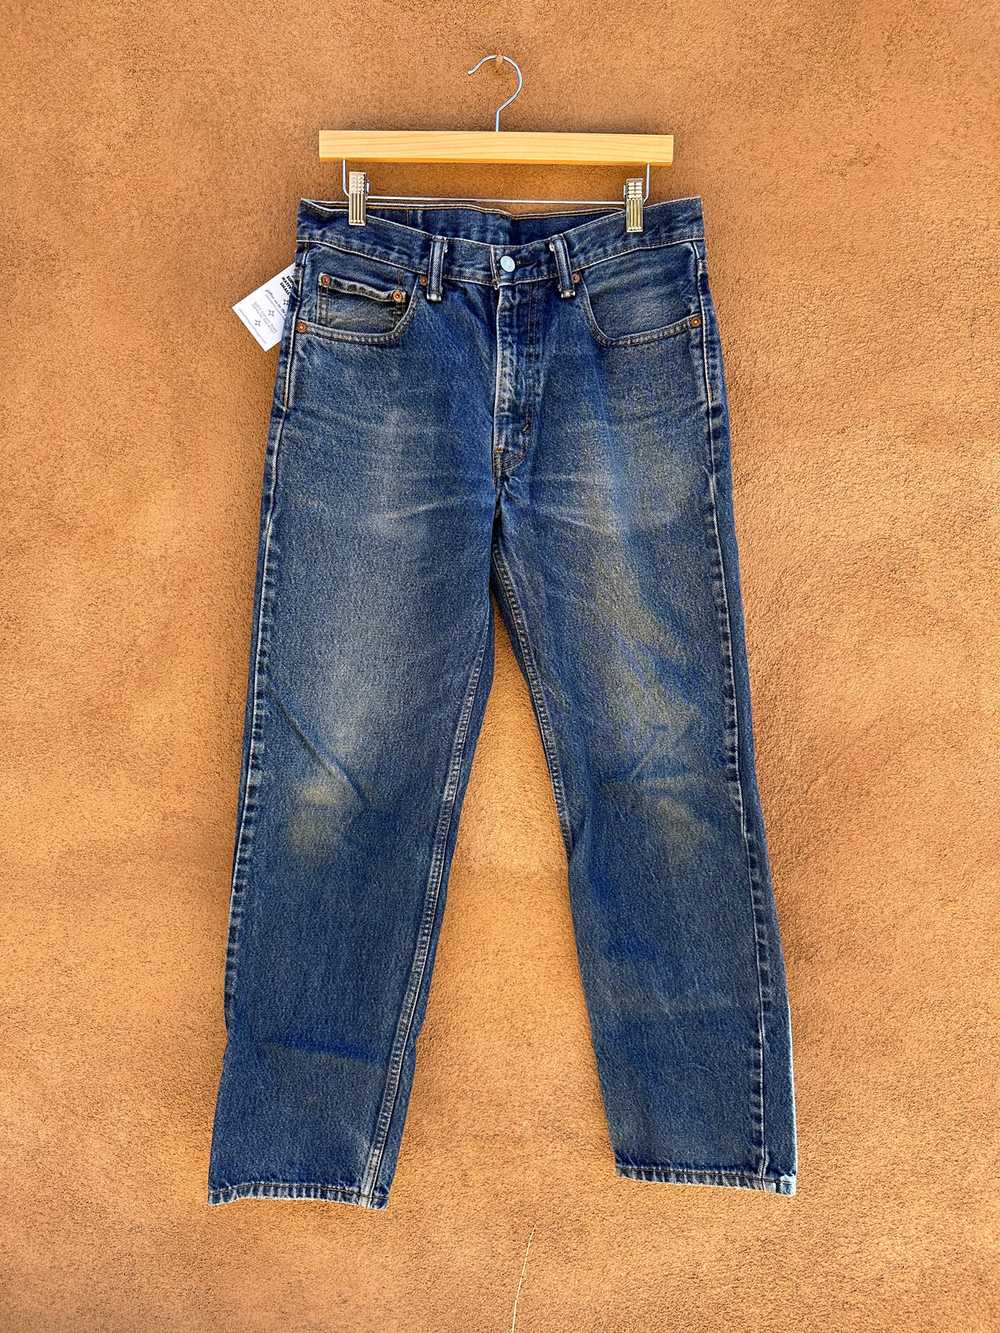 Levi's 550 Jeans 33 x 32 - image 1